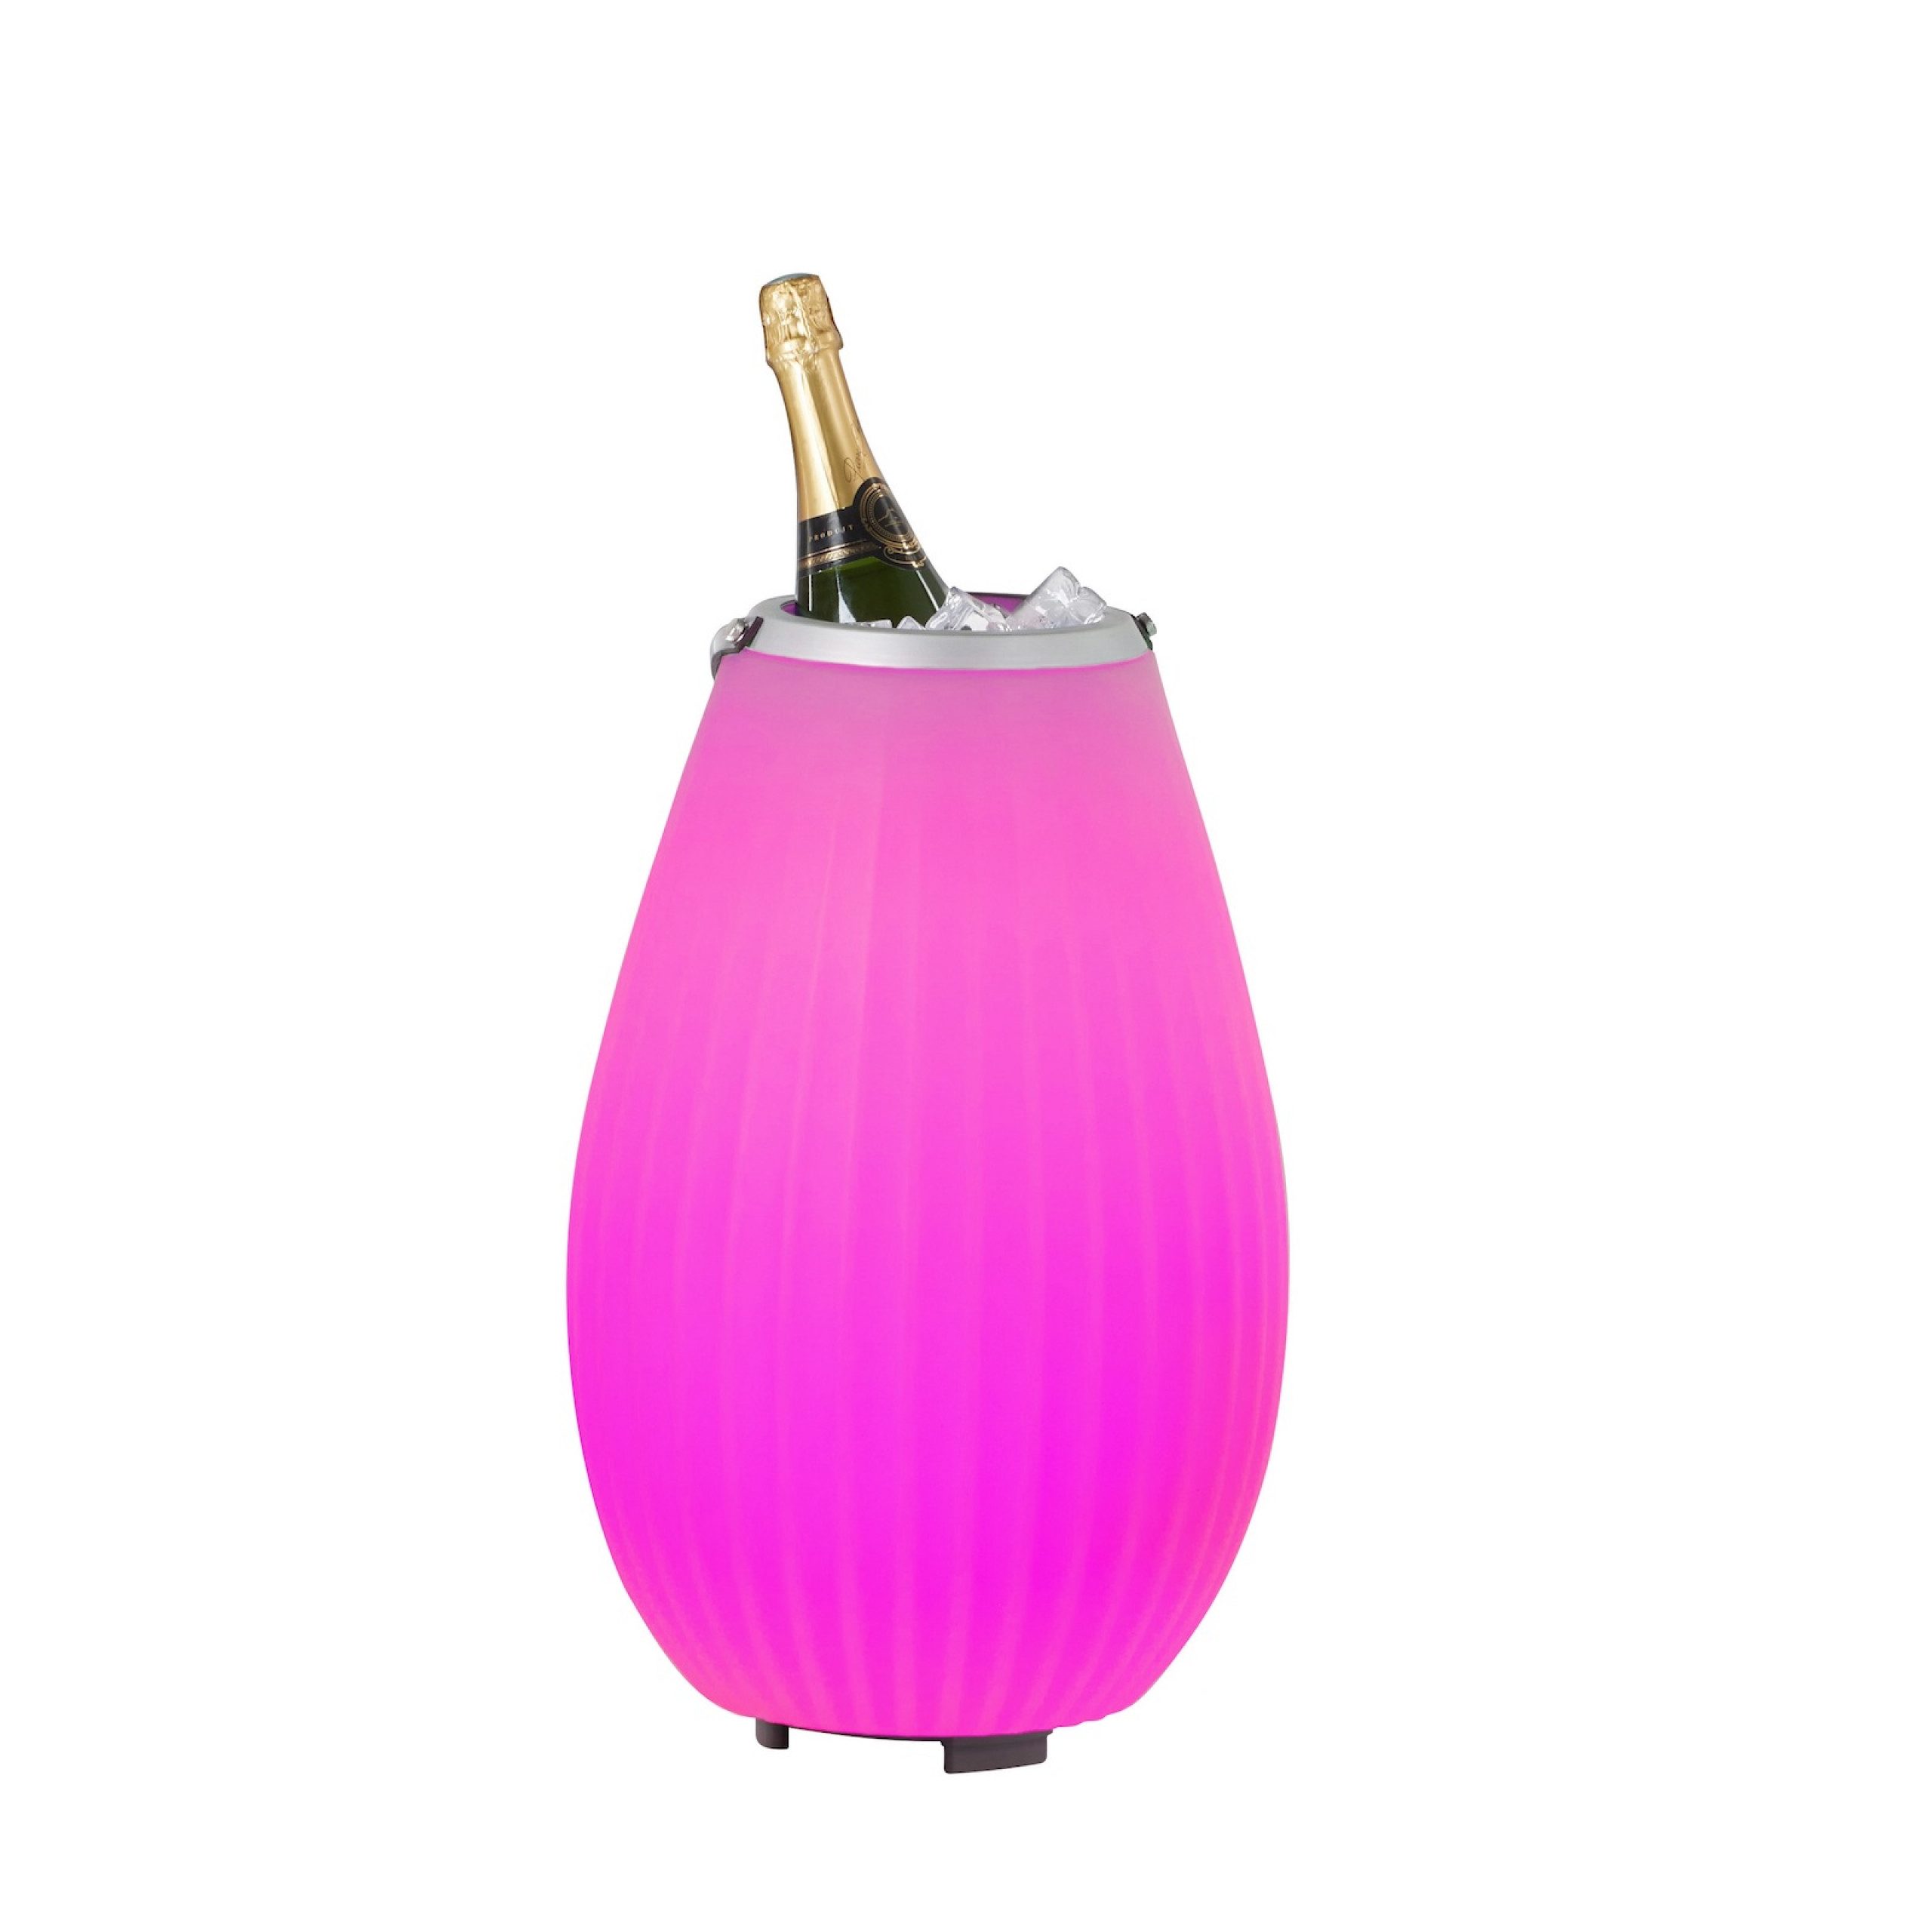 Joouls The Joouly 50 3in1 LED-beleuchteter Getränkekühler mit Bluetooth-Lautsprecher